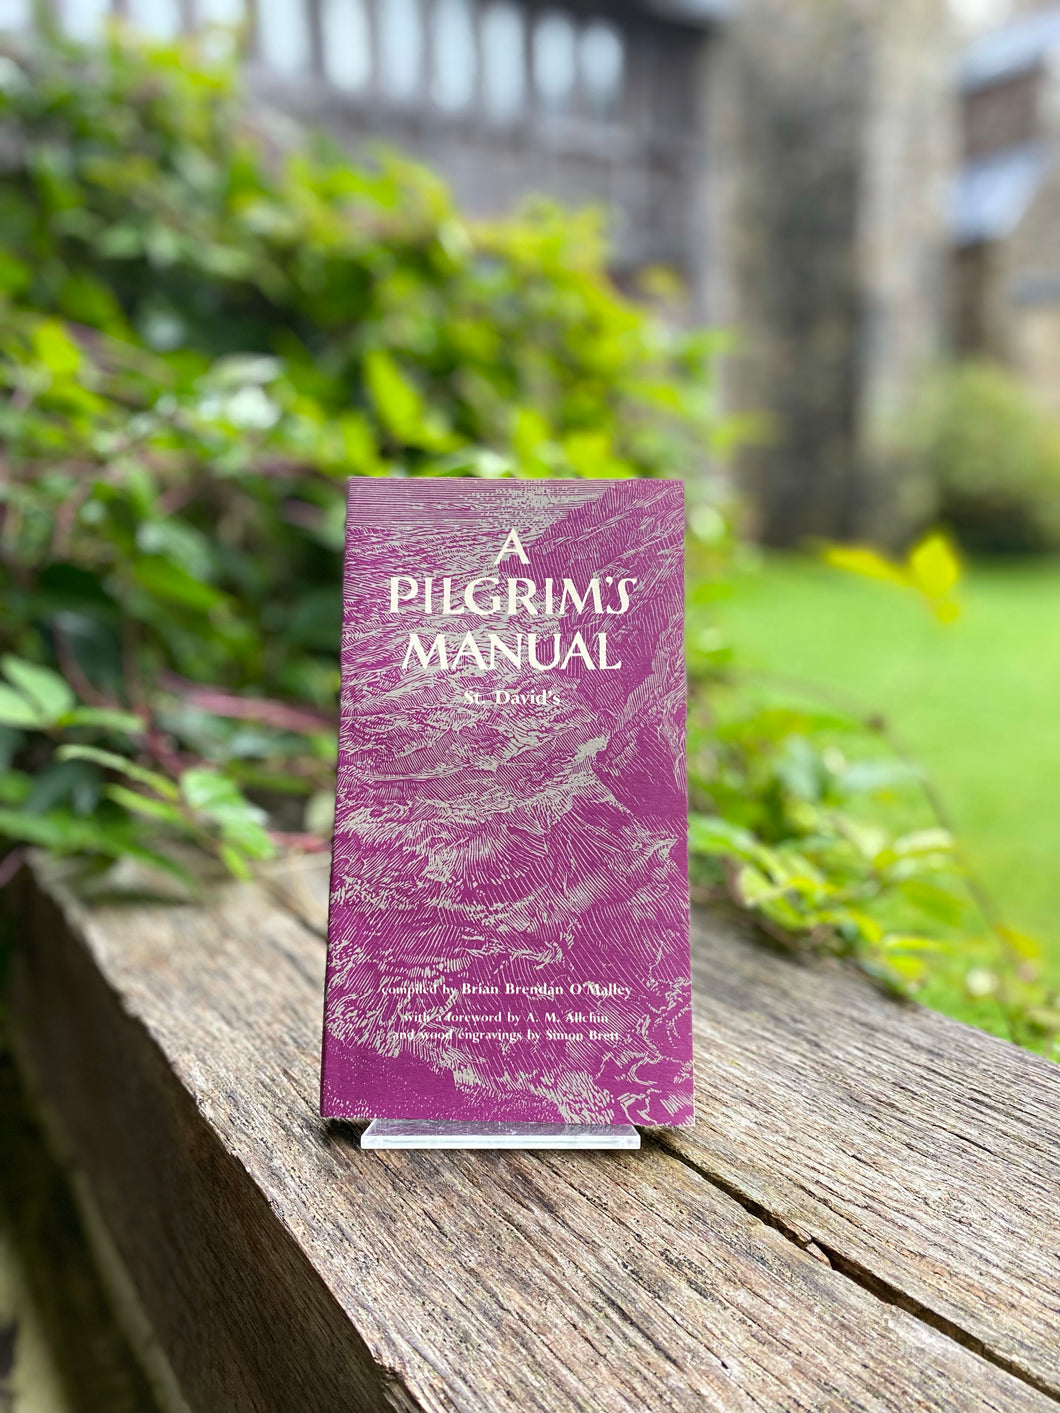 A Pilgrim's Manual - St Davids